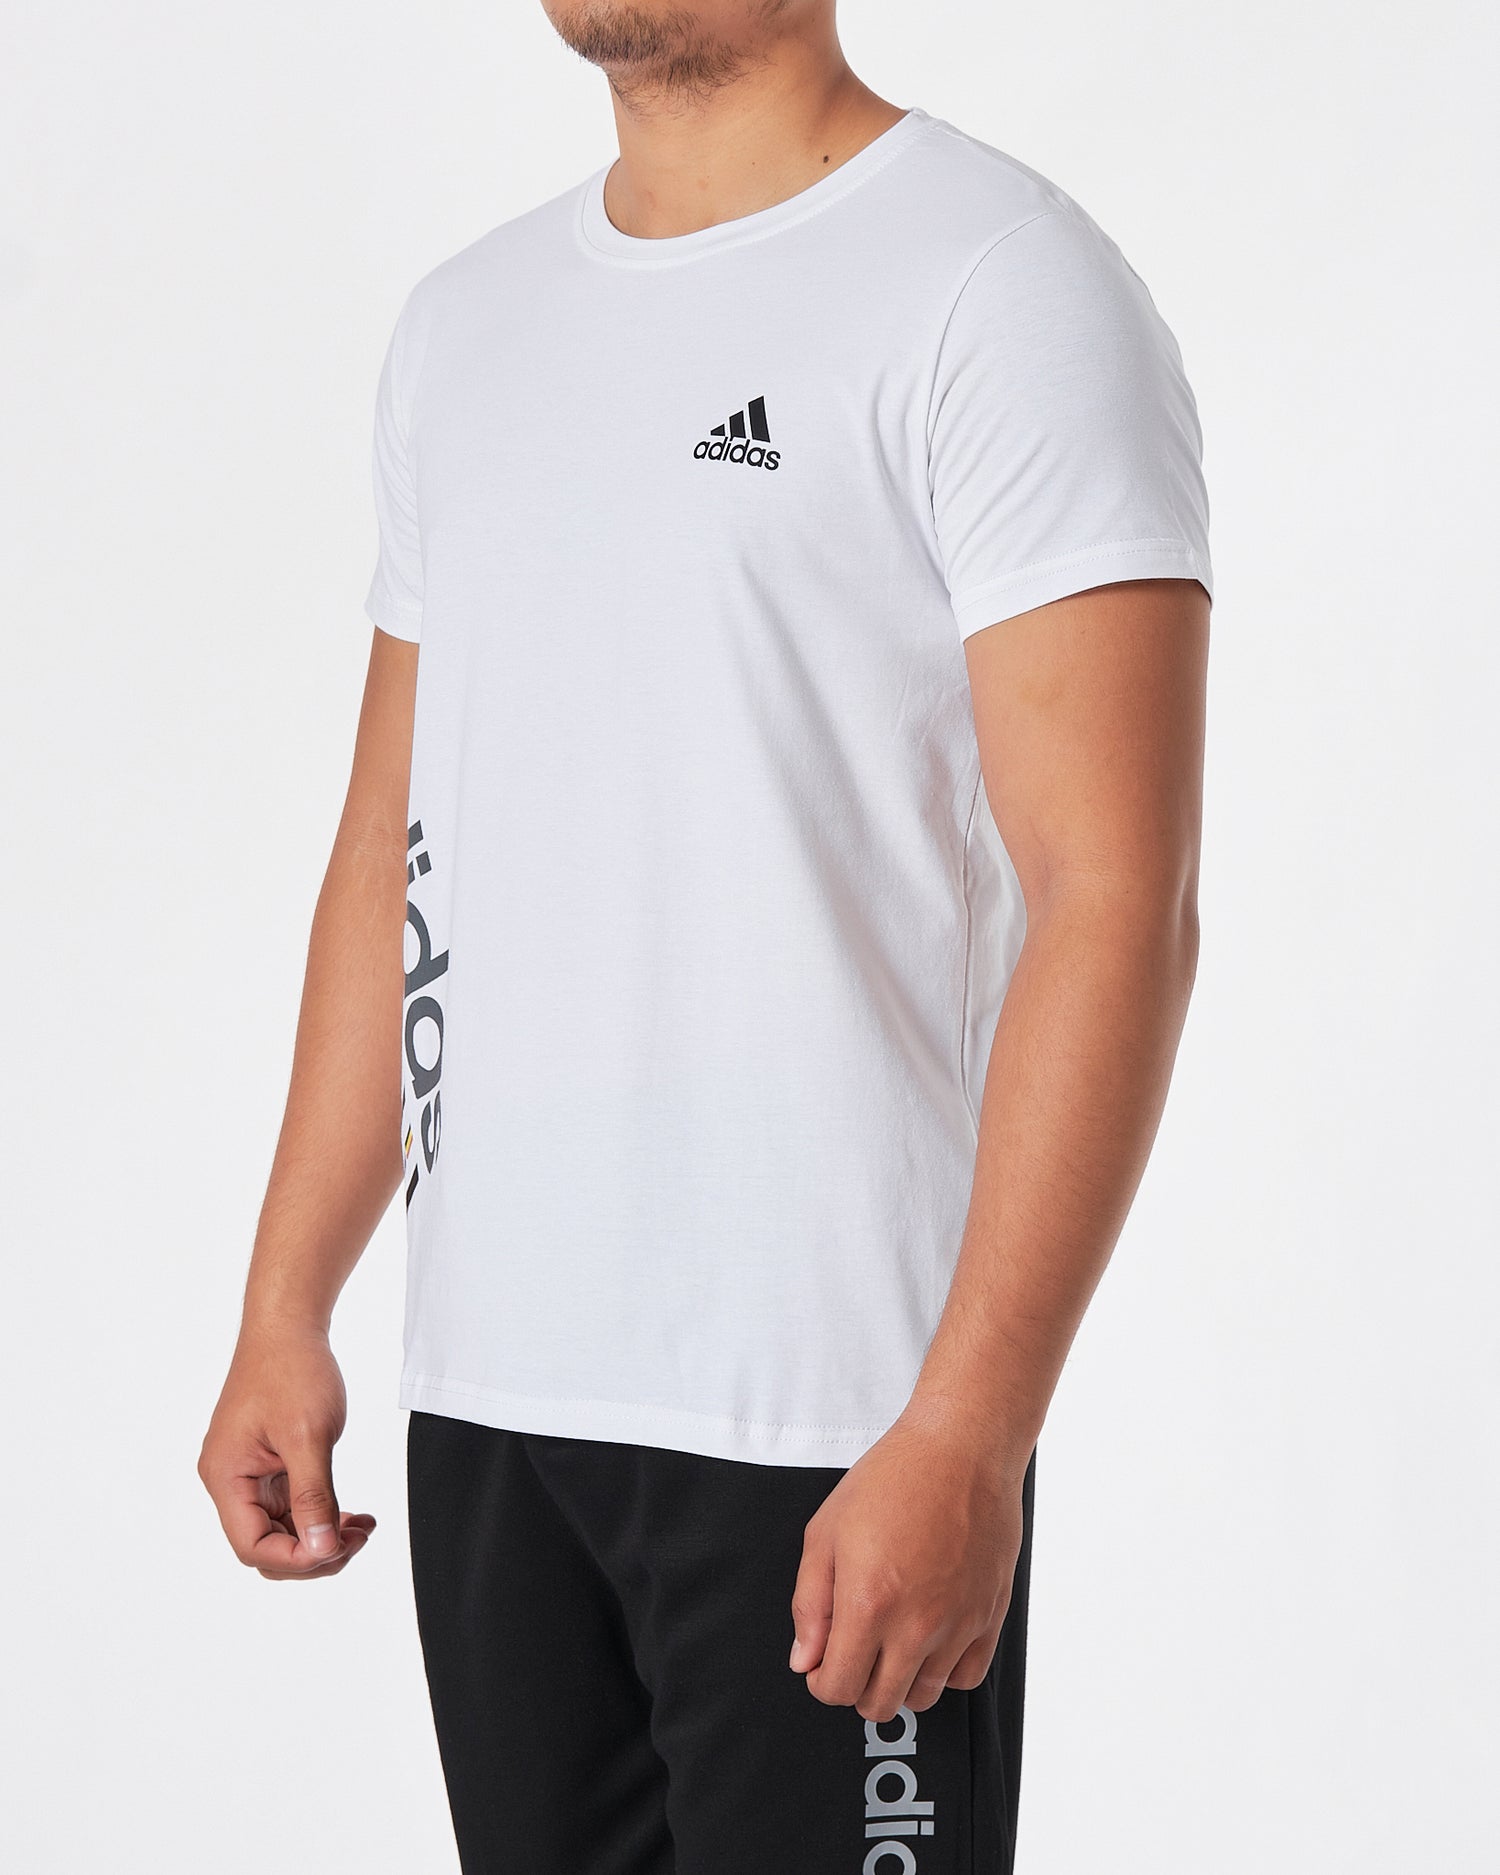 ADI Logo Vertical Printed Men White T-Shirt 15.50